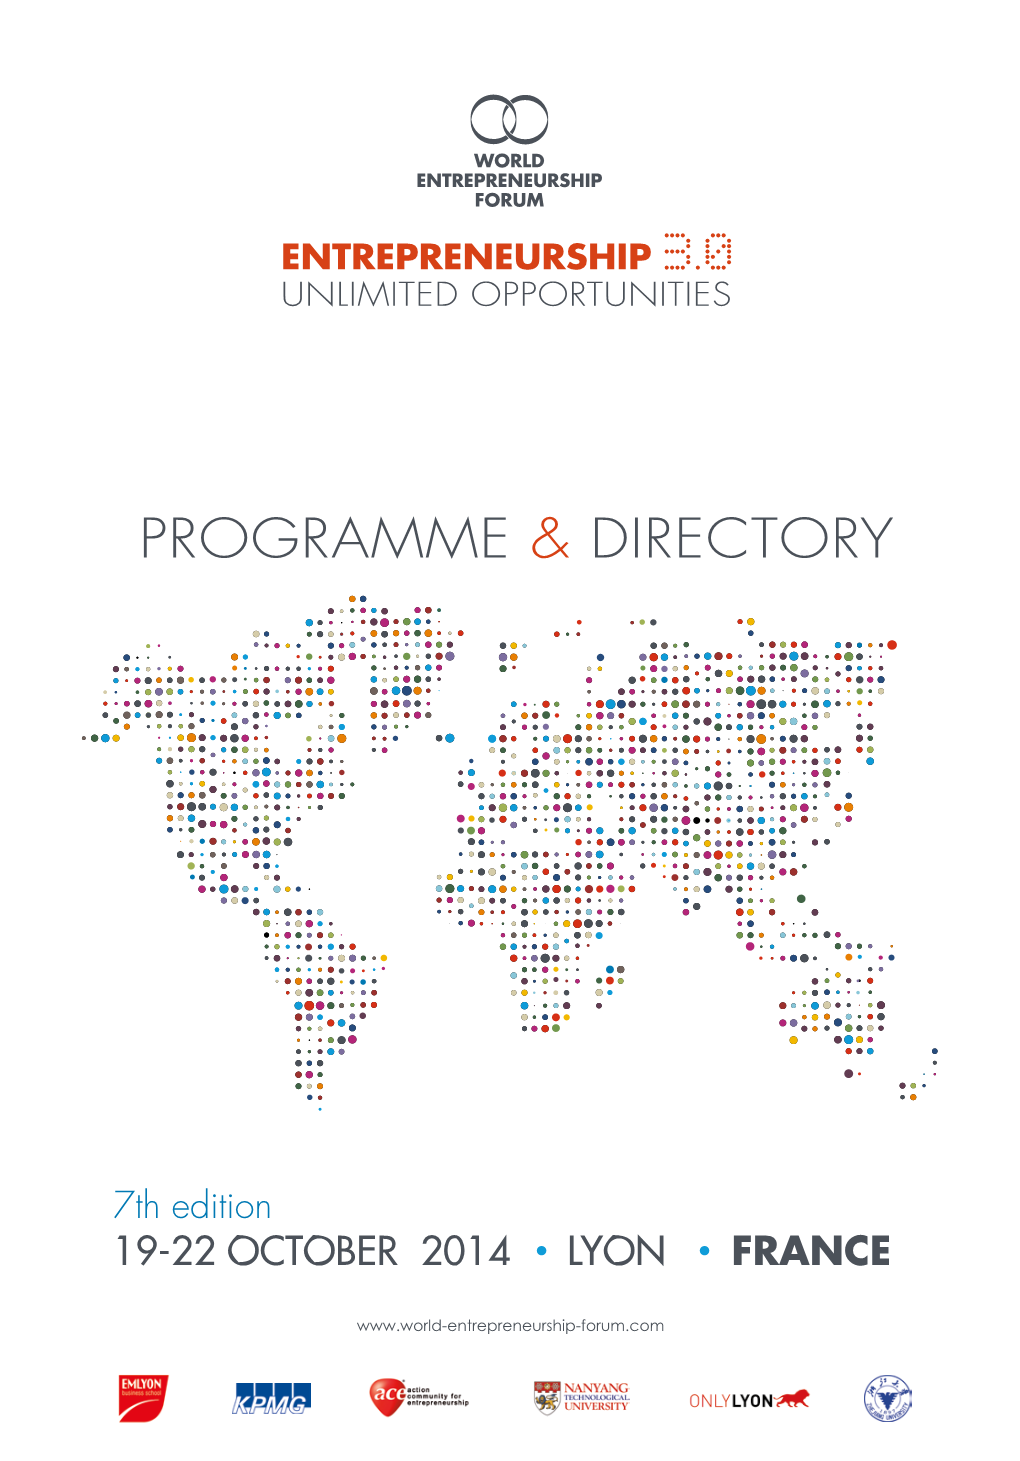 World Entrepreneurship Forum 2014